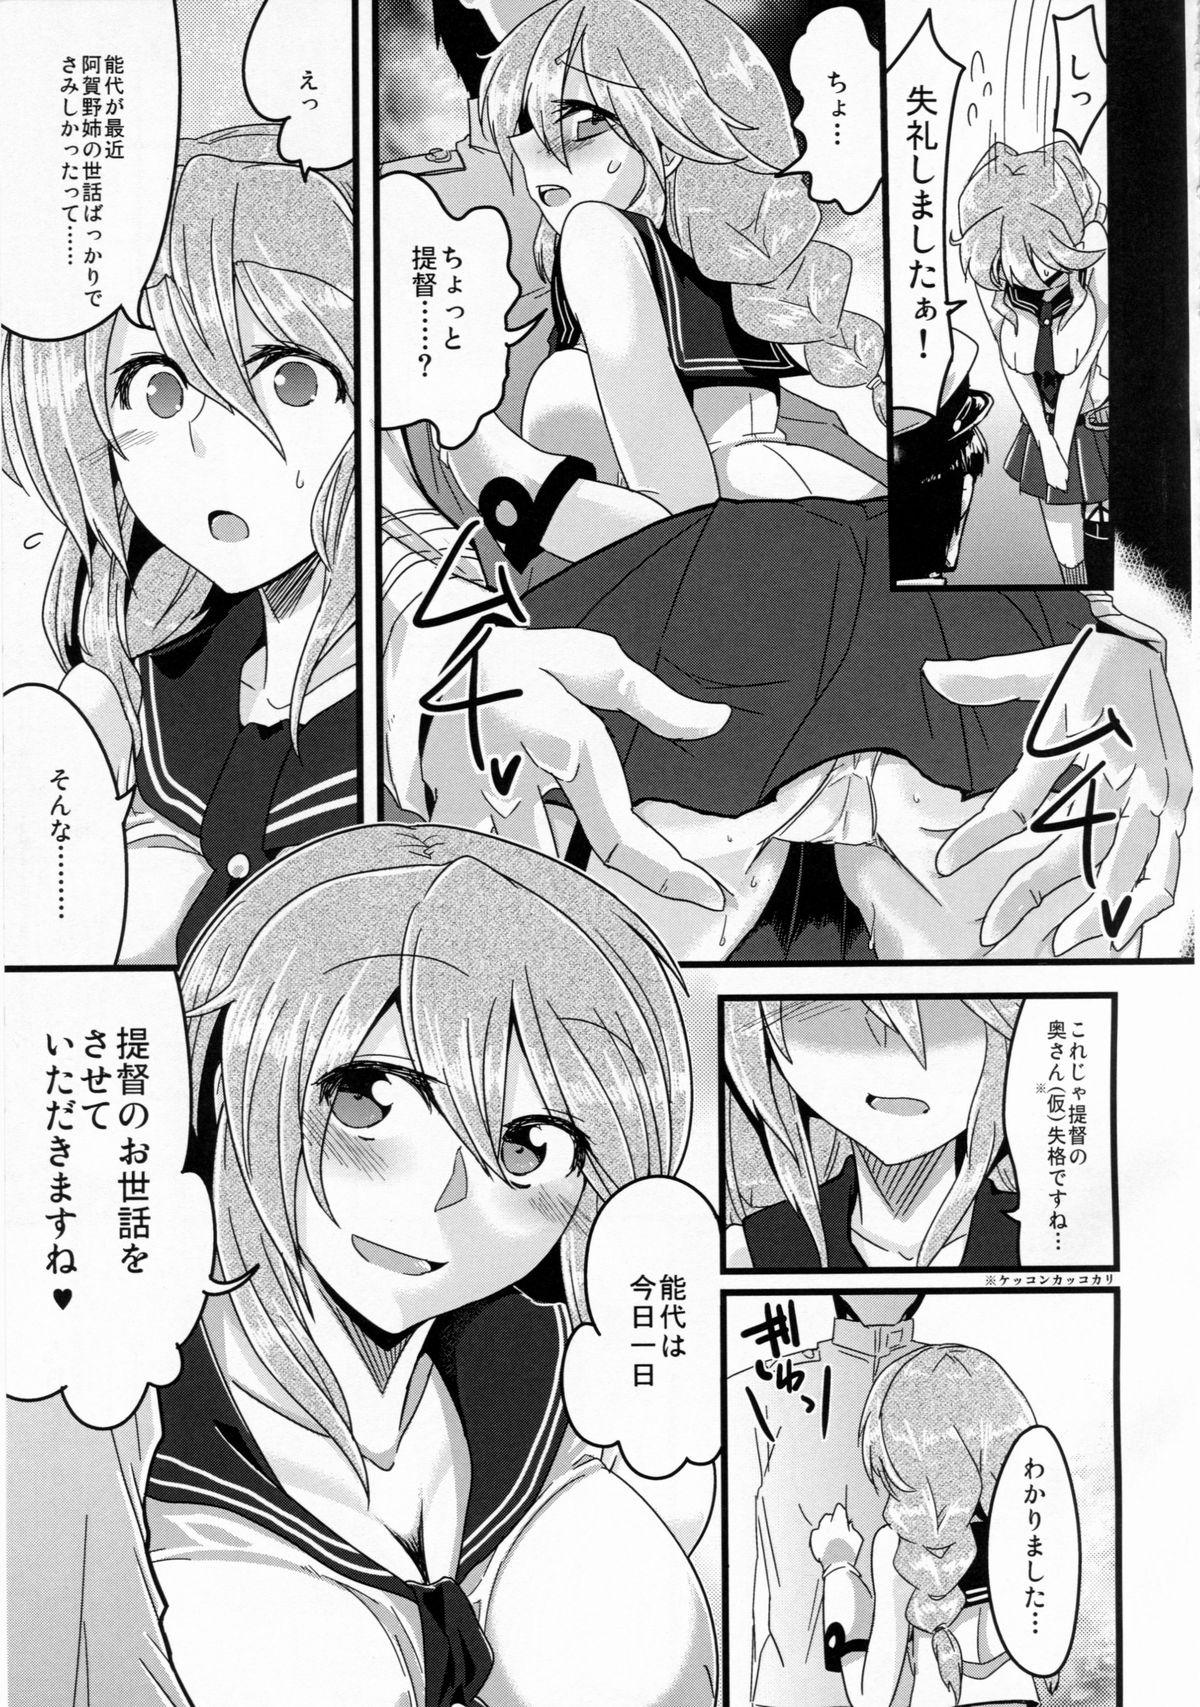 Perverted Hai! Teitoku Noshiro, Oyobi desu ka? - Kantai collection Group - Page 5